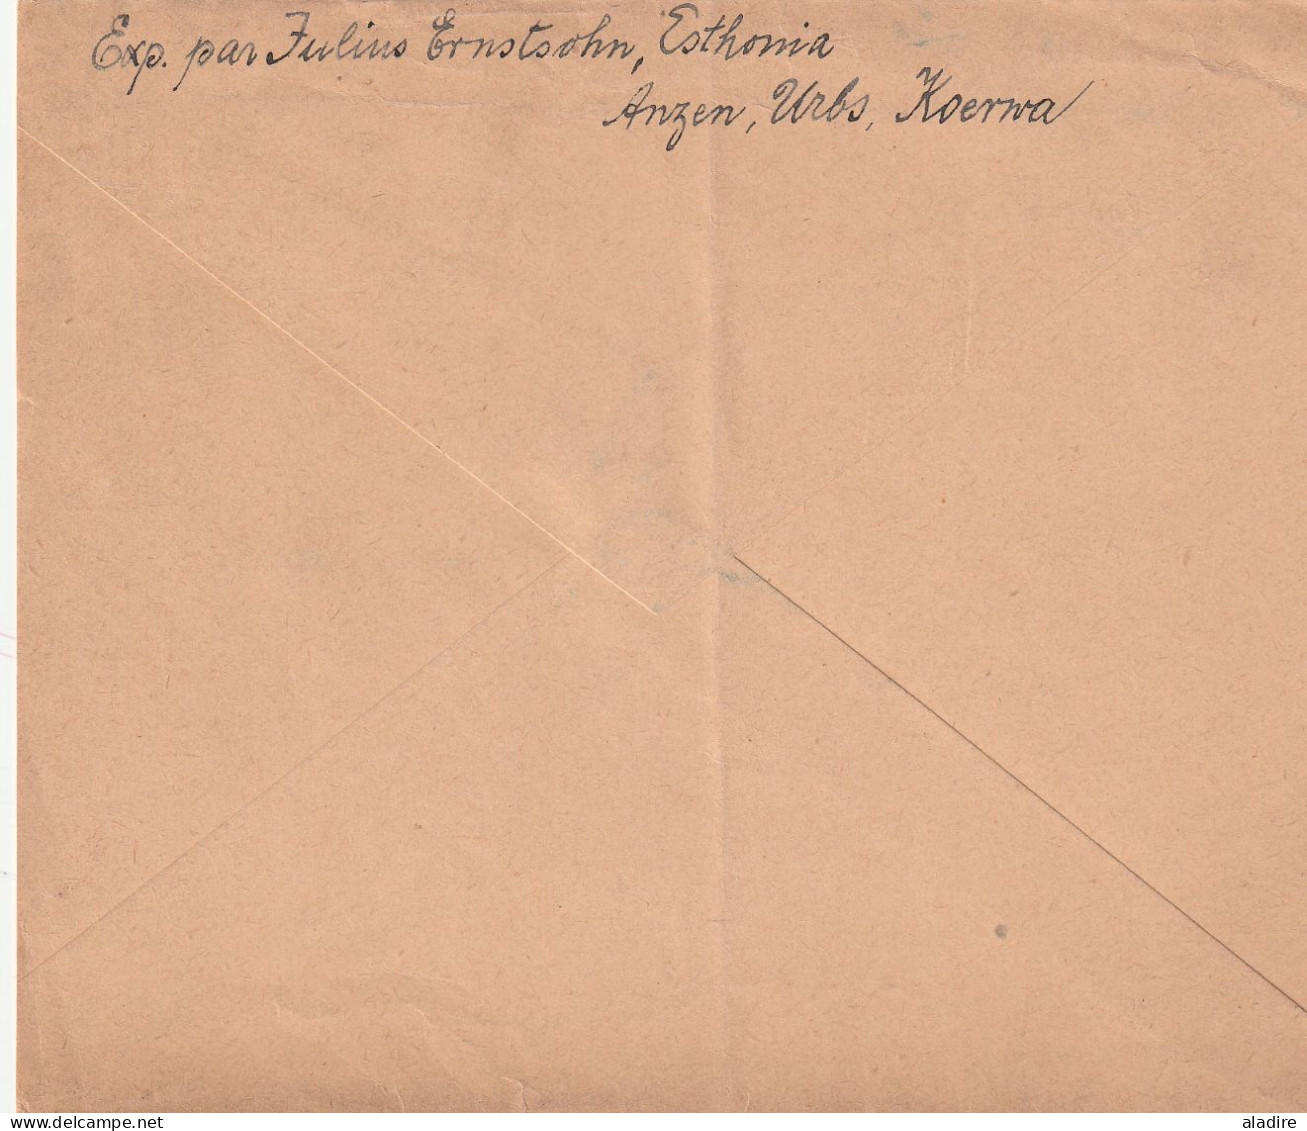 1881 / 1923 - ESTONIE - EESTI  - ESTONIA - lot de 6 enveloppes (dont 1 devant) - 12 scans